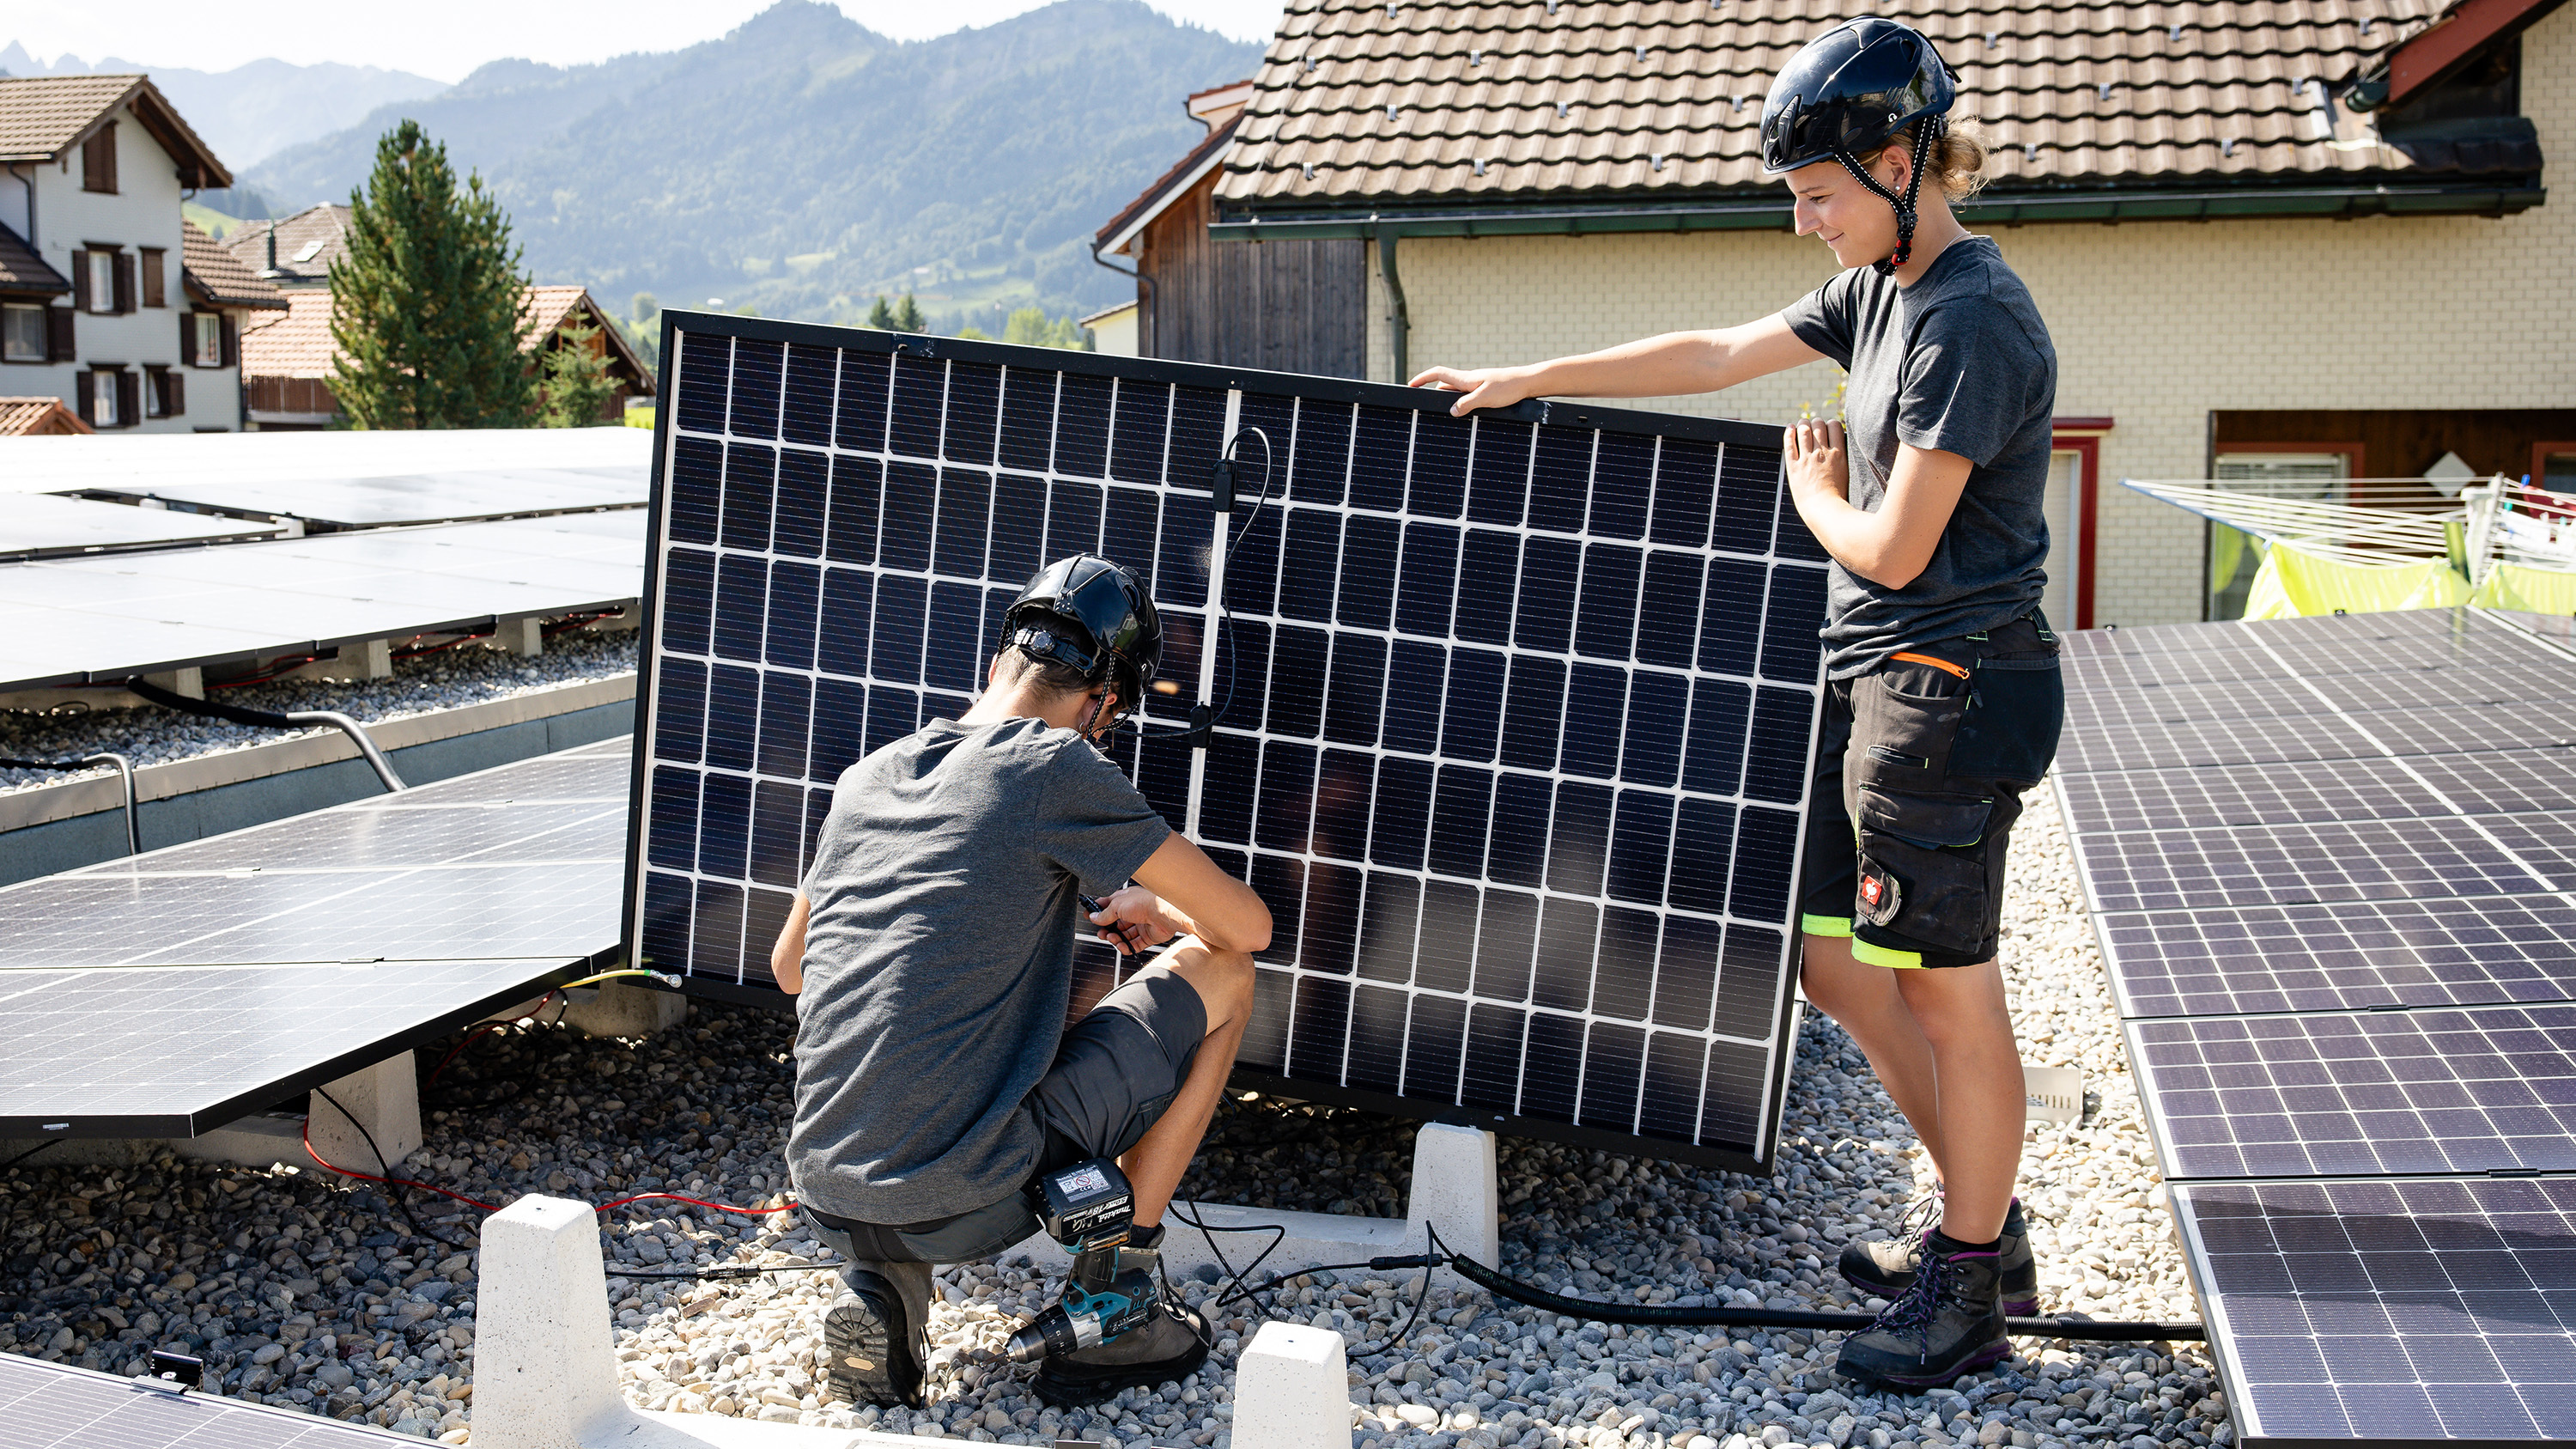 Zwei Lernende arbeiten an Solarpanels in Arbeitskleidung und Helm auf einem Flachdach